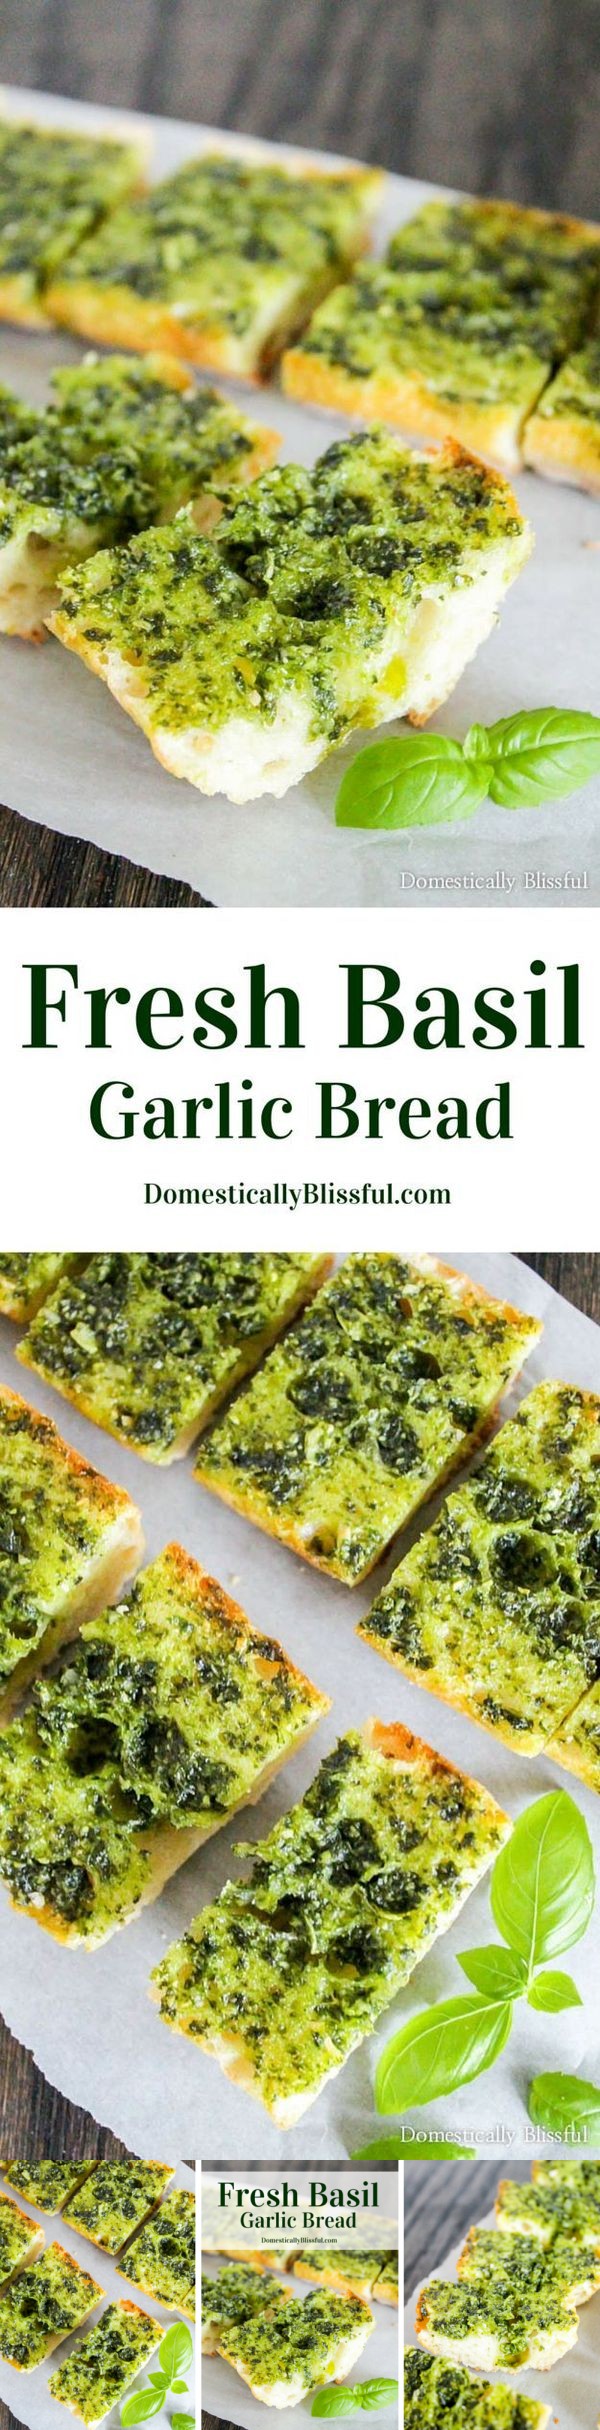 Fresh Basil Garlic Bread